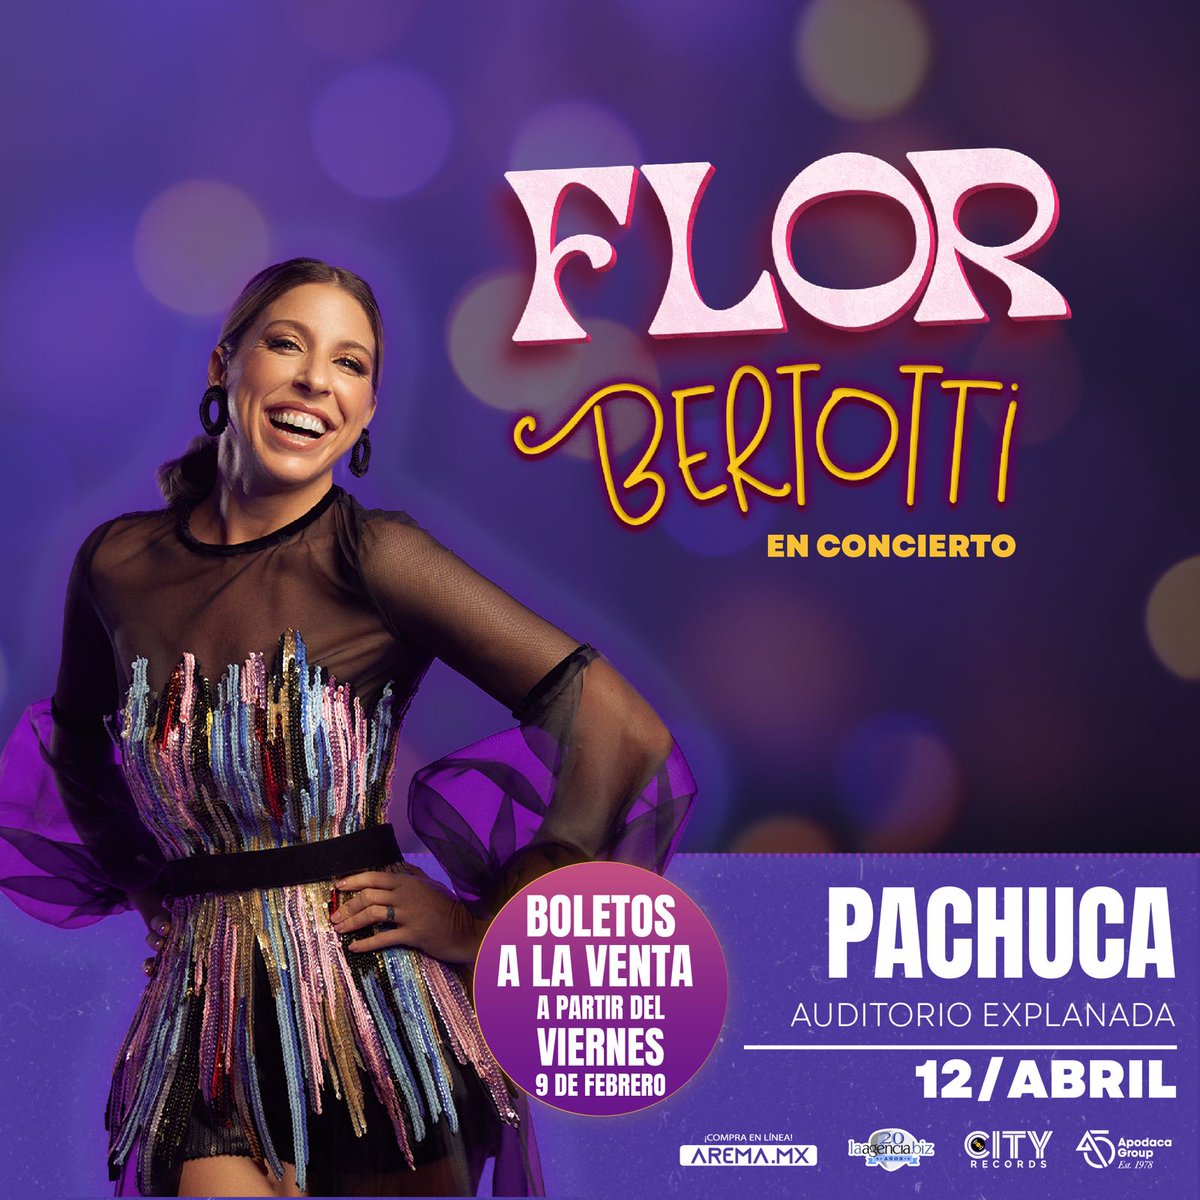 Preparen sus Flores Amarillas porque Flor Bertotti llegará el 12 de Abril al Auditorio Explanada de Pachuca 🌻 @florbertottiok 🌻 Boletos a la venta a partir del 9 de Febrero a través de Arema Tickets